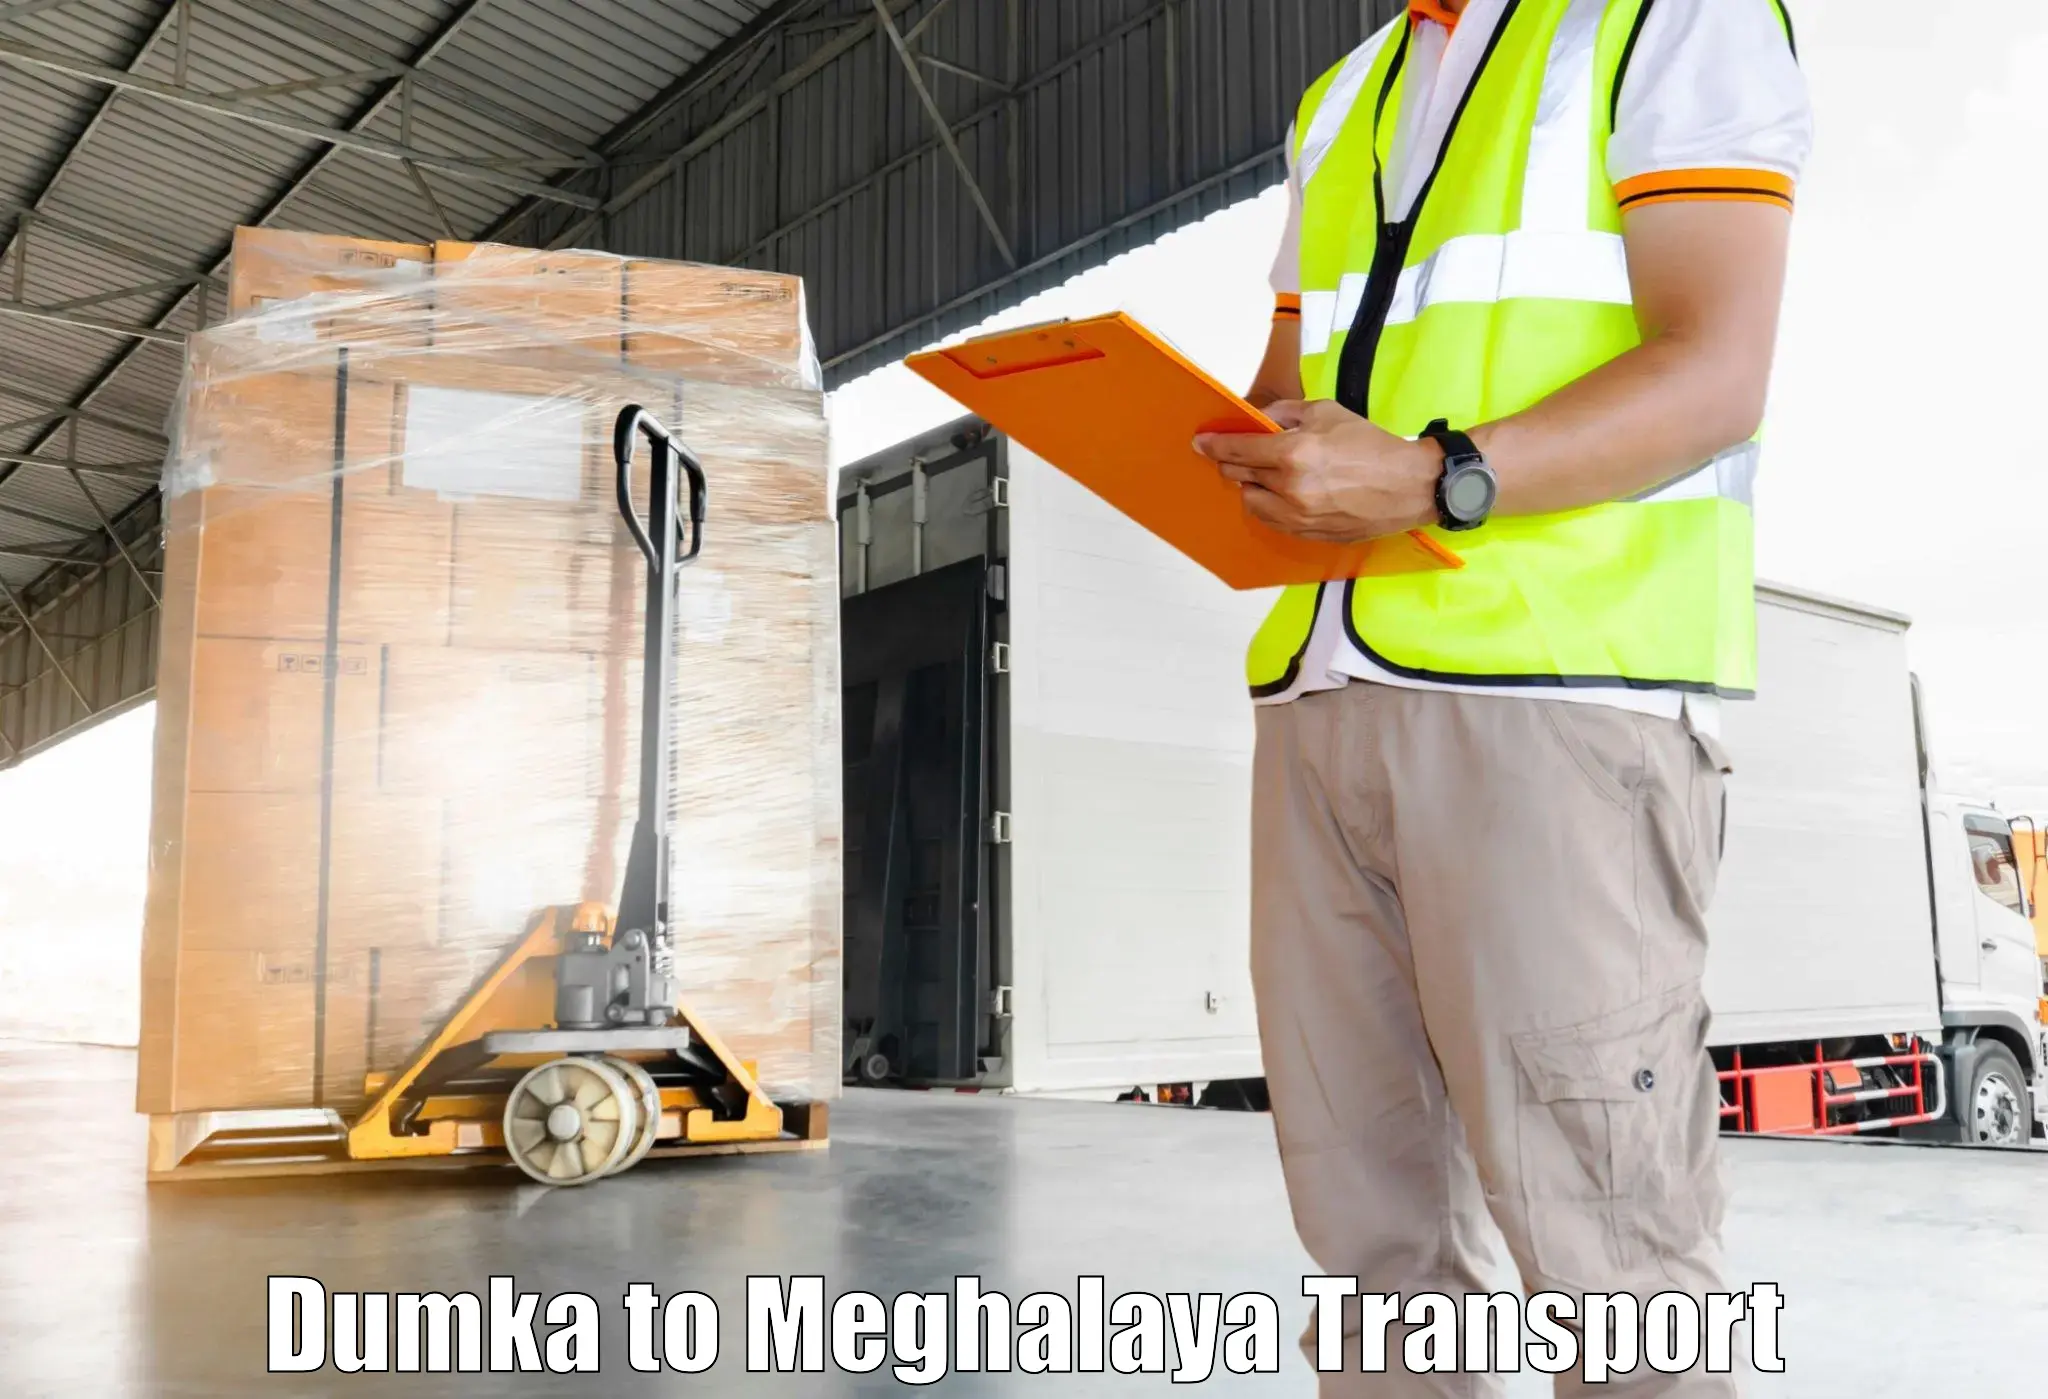 Transportation services Dumka to Jowai